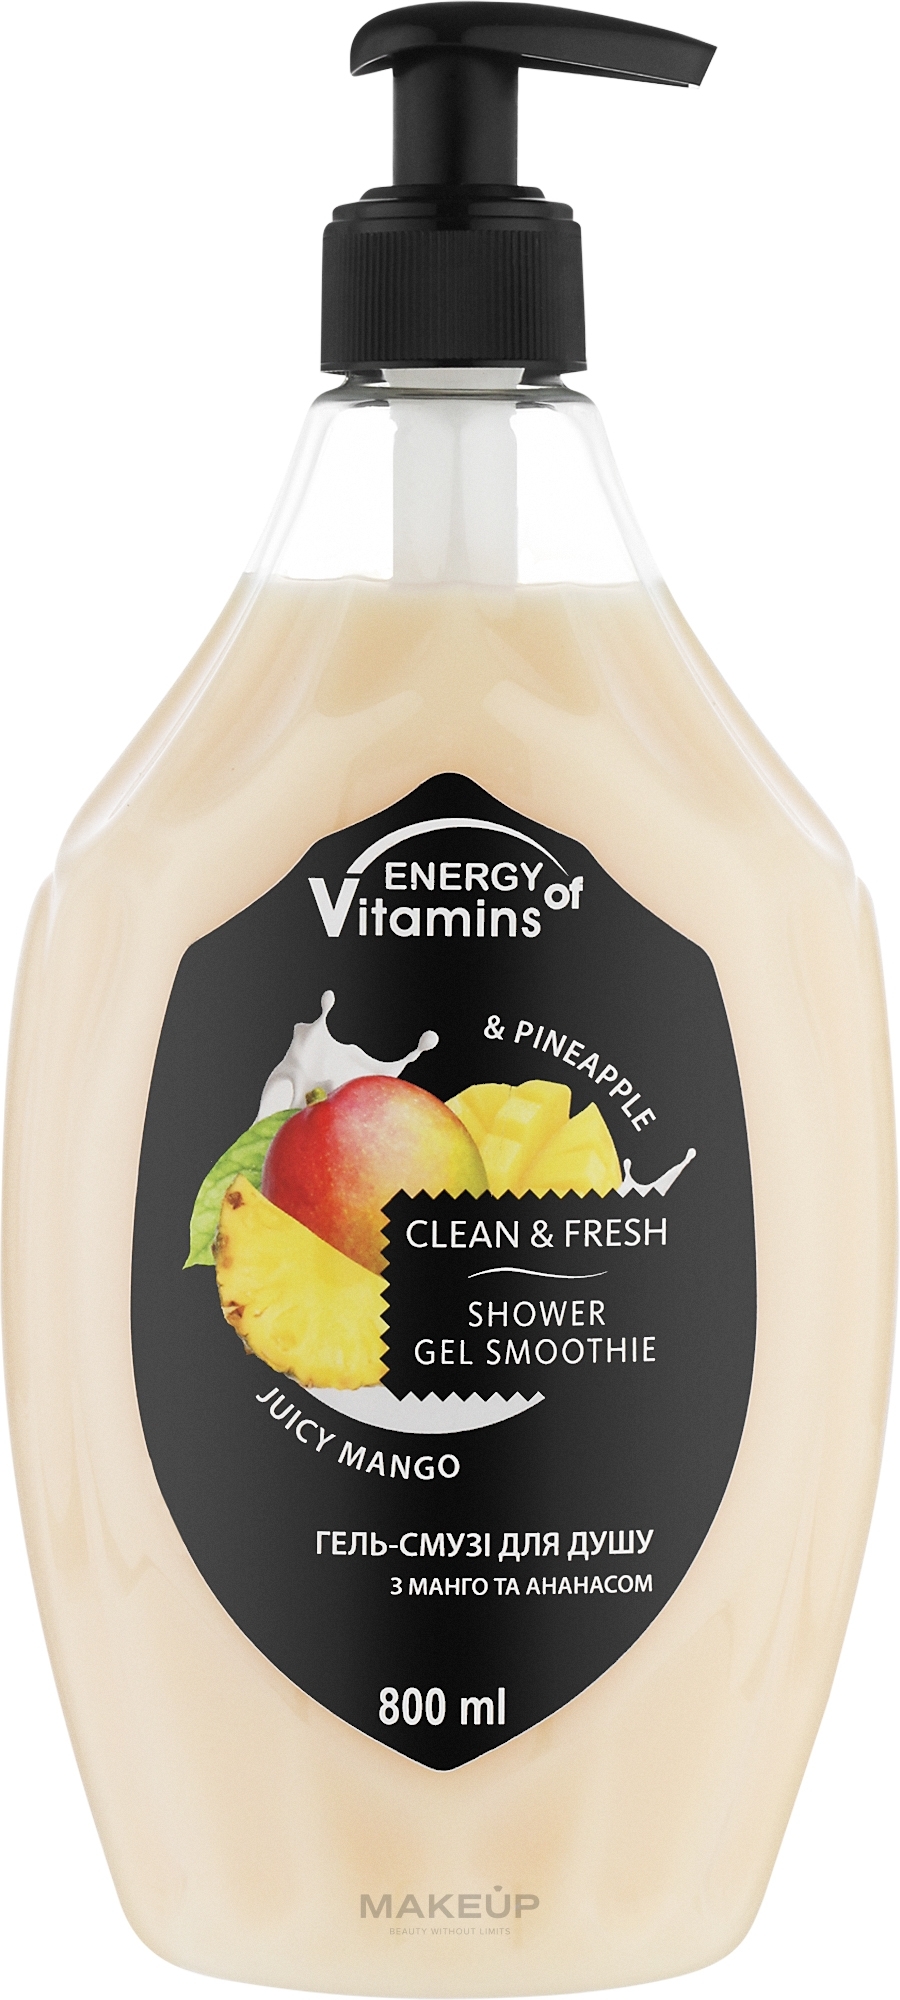 Гель-смузи для душа "Mango & Pineapple" - Energy of Vitamins Clean&Fresh Shower Gel Smoothie — фото 800ml